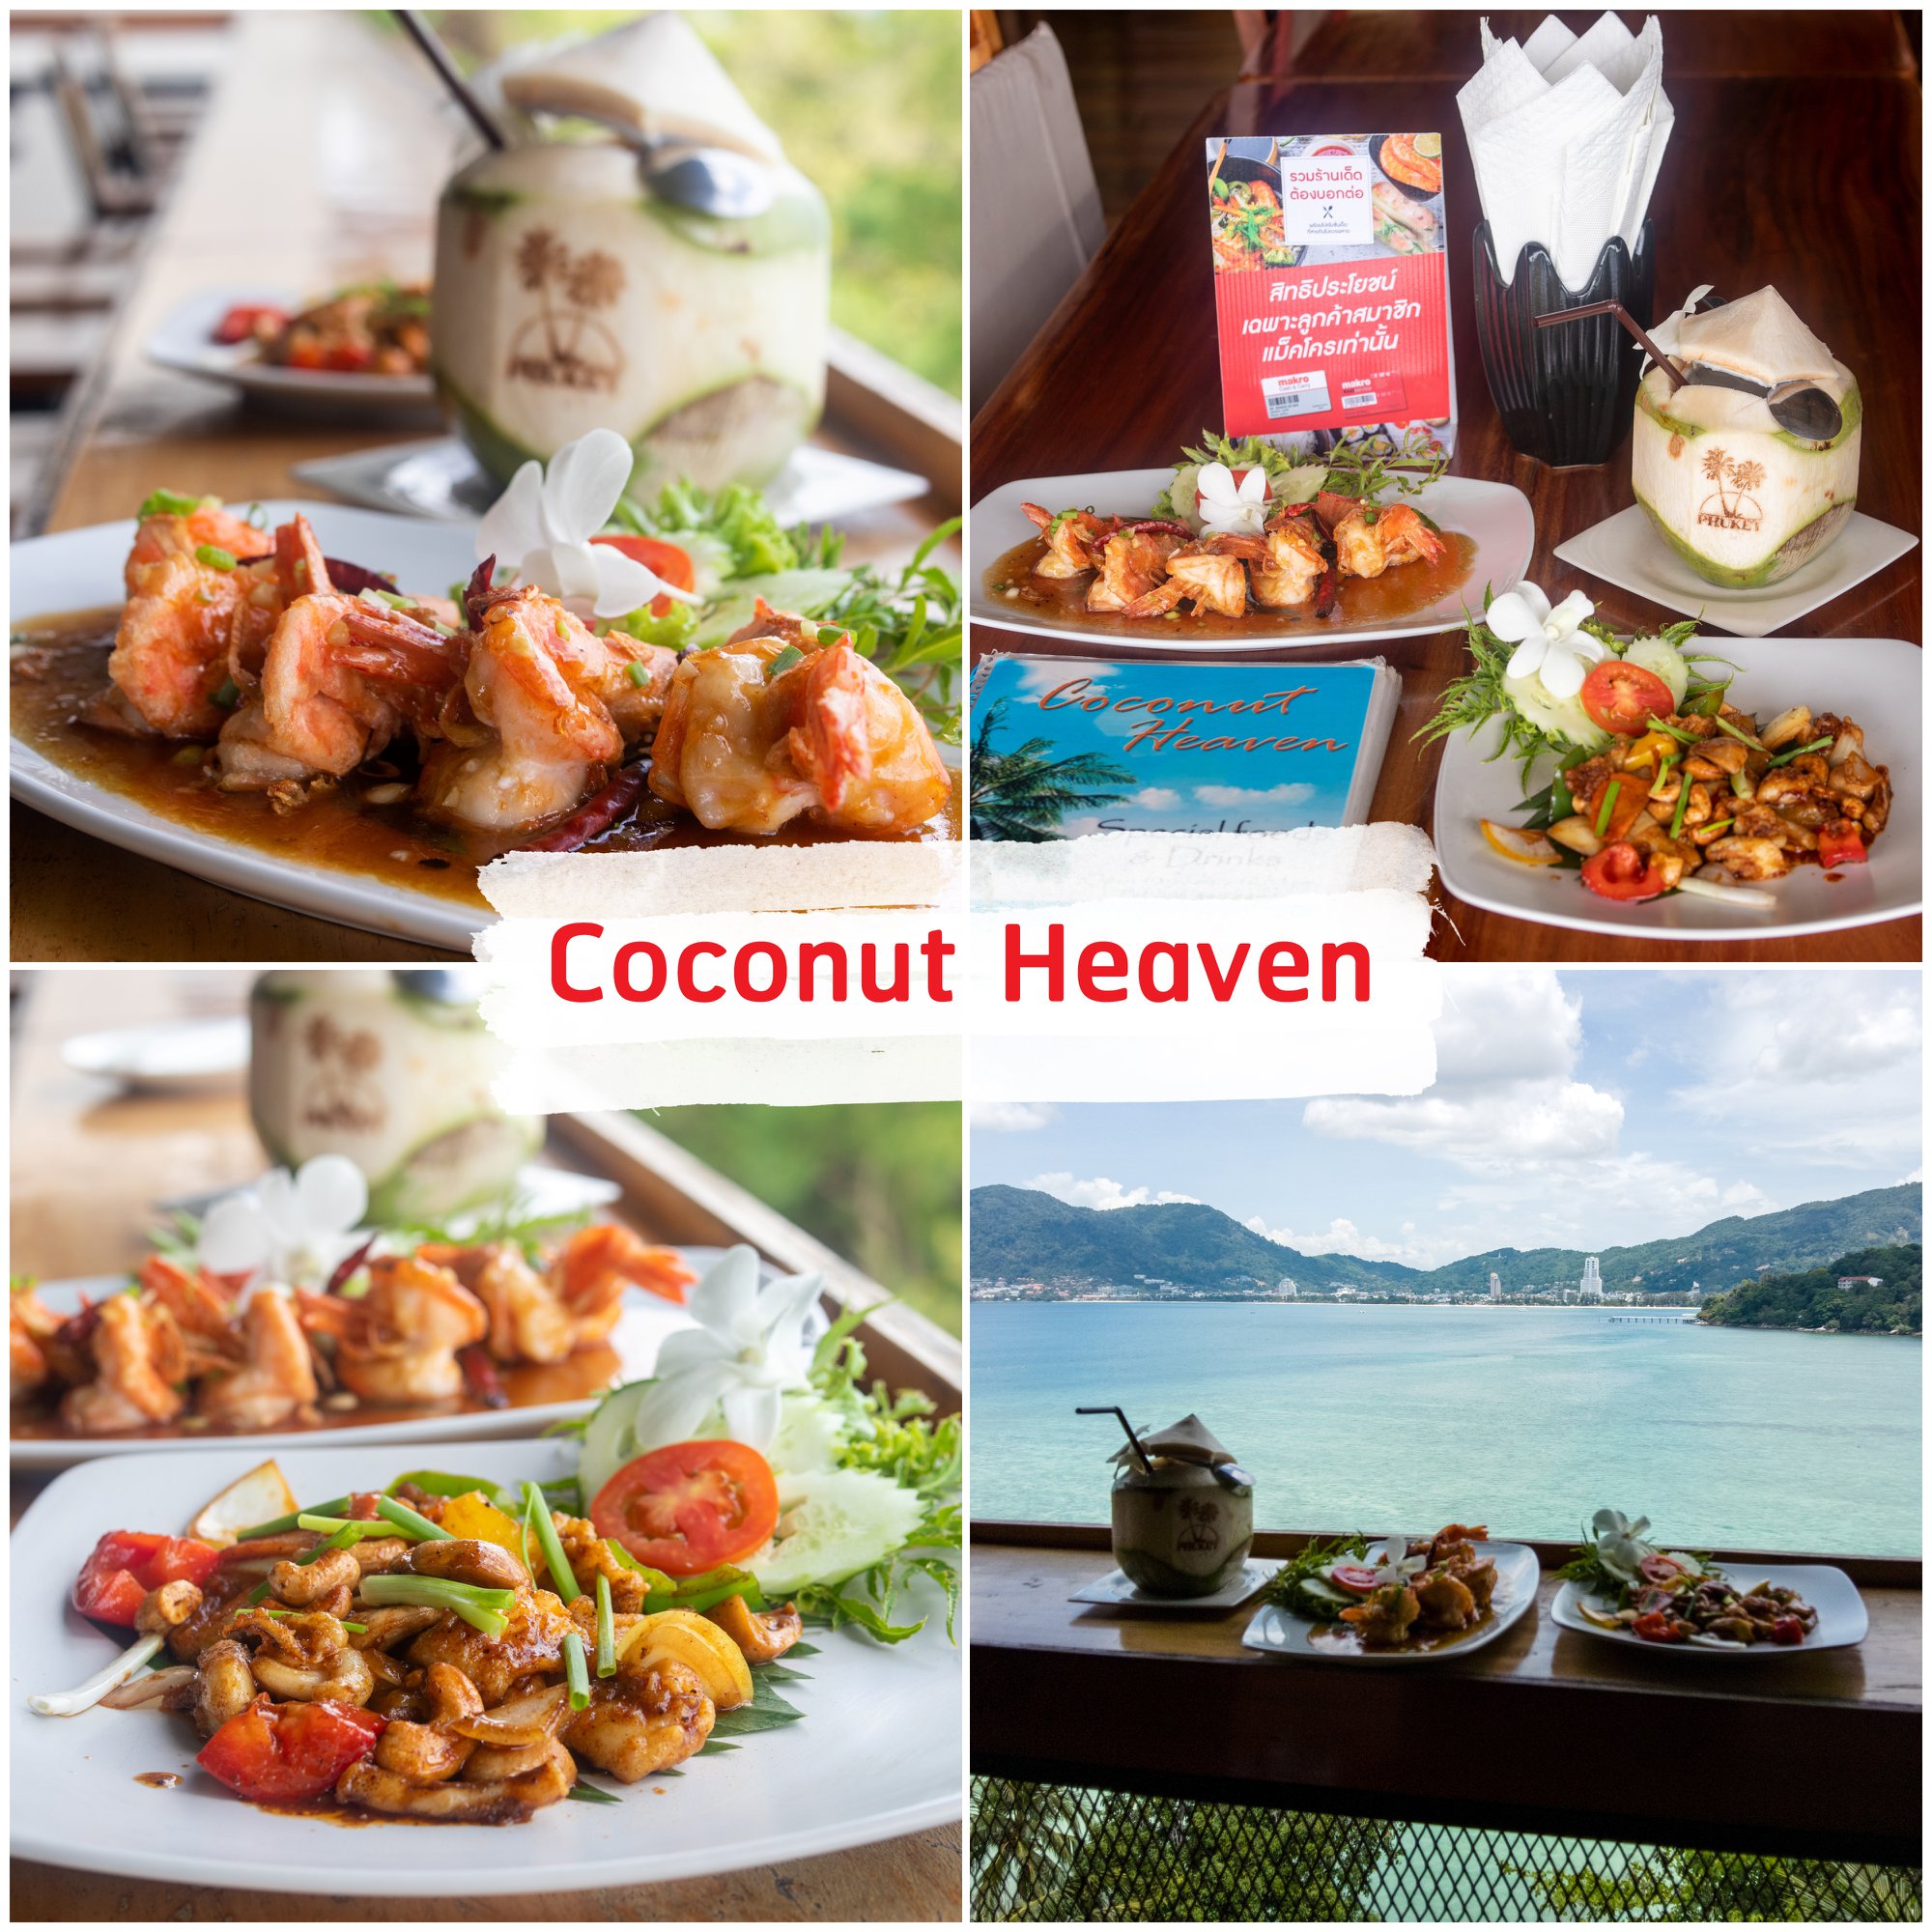 Coconut-Heaven-ป่าตอง -ที่สุดแห่งร้านอาหารวิวหลักล้าน-ที่ใช้-Coconut-หรือมะพร้าวเป็นซิกเนเจอร์หลักของร้าน-ใน-Concept-ชมทะเล-จิบน้ำมะพร้าวชิวๆ
ด้วยจุดเด่นของร้านที่วิวสวยมองได้-180องศาทั้งป่าตอง-อาหารก็อร่อยน้าา-แอดแนะนำ-น้ำพริกกุ้งสด--ทำที่ต่อที่---แกงส้มเครื่องสูตรทางร้าน-และน้ำมะพร้าวอ่อนสดจากแม็คโคร-บอกเลยว่าเด็ด
วิวนี้สวยจริงๆ-ทั้งเช้า-สาย-บ่ายเย็น-แถมตอนนี้น้ำใสมวากๆ-เลยยครับ-ต้องมาน้าา ภูเก็ต,ร้านอาหารภูเก็ต,ร้านอร่อยภูเก็ต